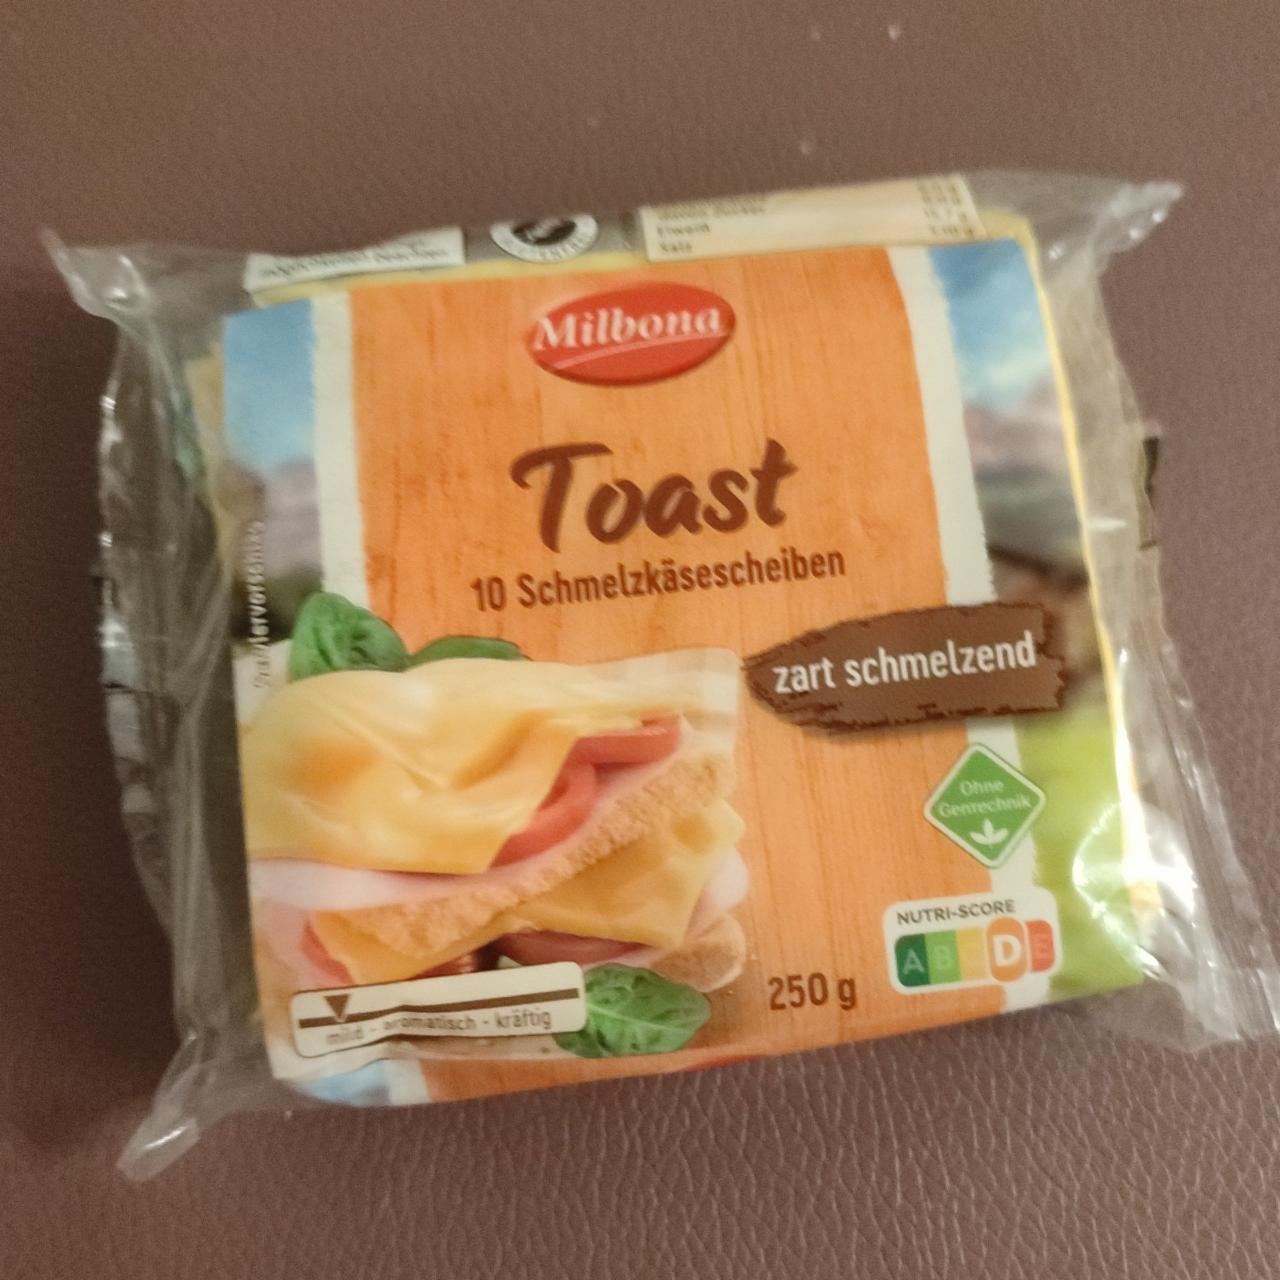 Фото - Toastový sýr Milbona